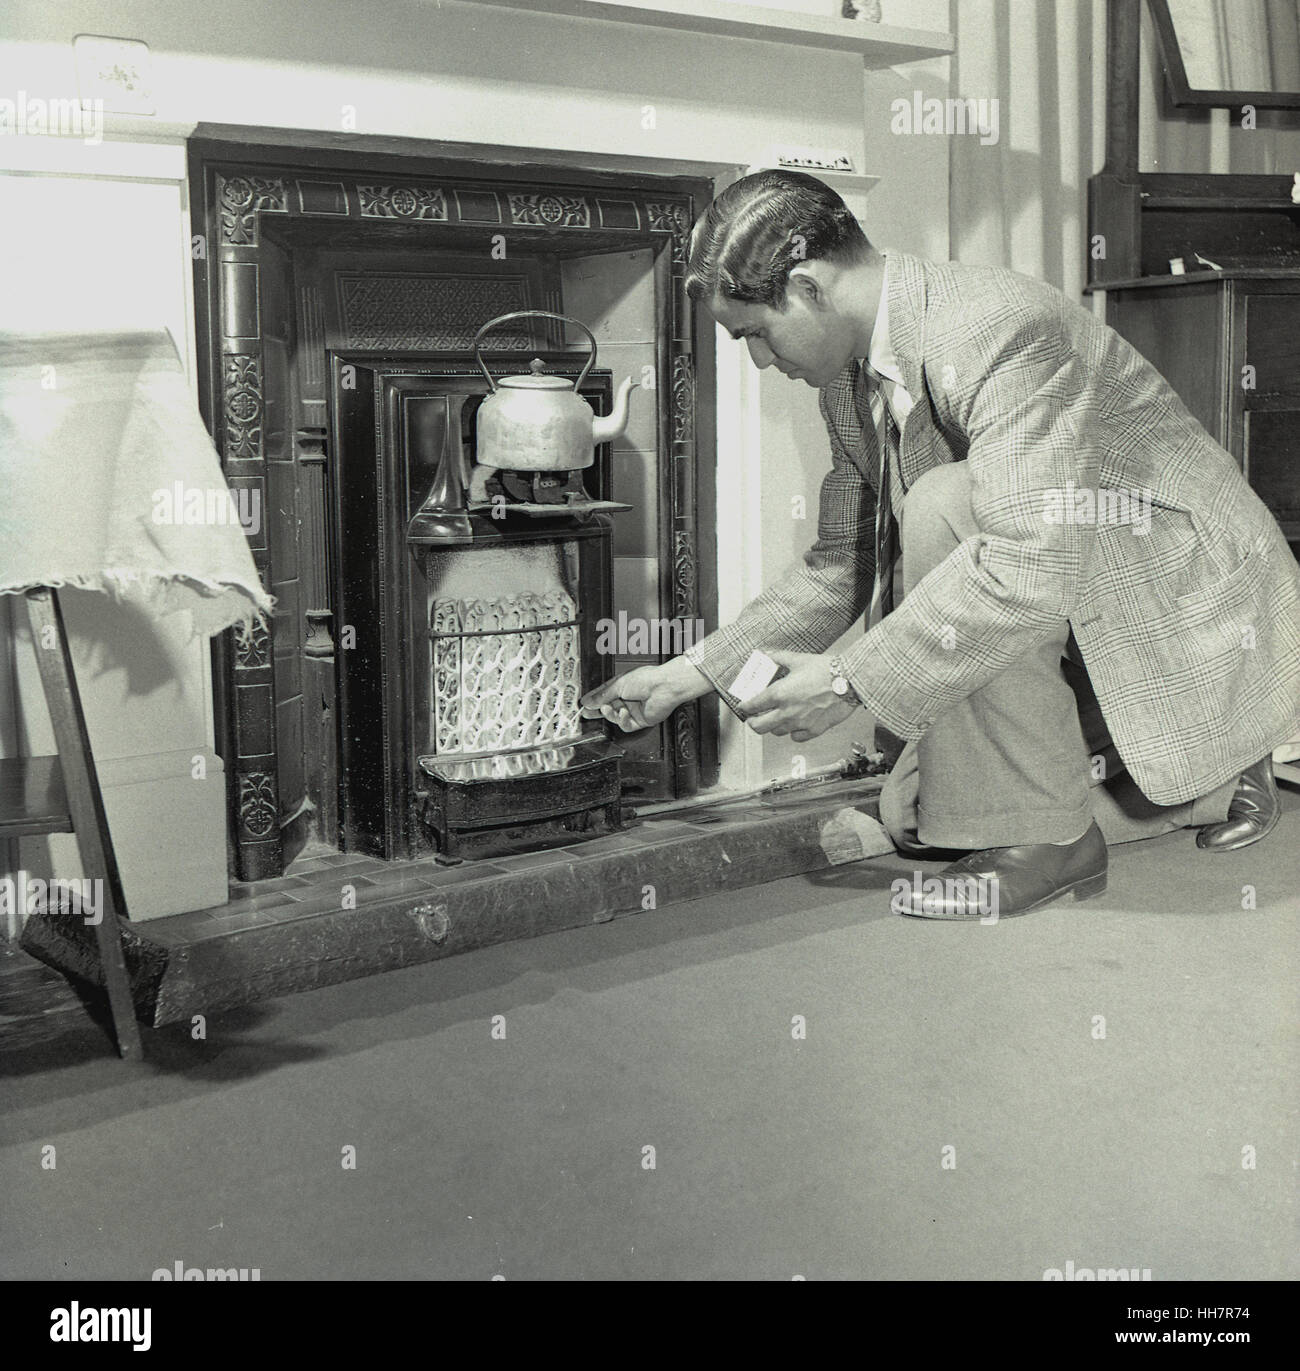 1950, historiques, nouvellement arrivés à l'étranger étudiant indien à l'Institut de l'éducation (OIE) tente d'allumer un feu de gaz pour chauffer une bouilloire à son logis. Banque D'Images